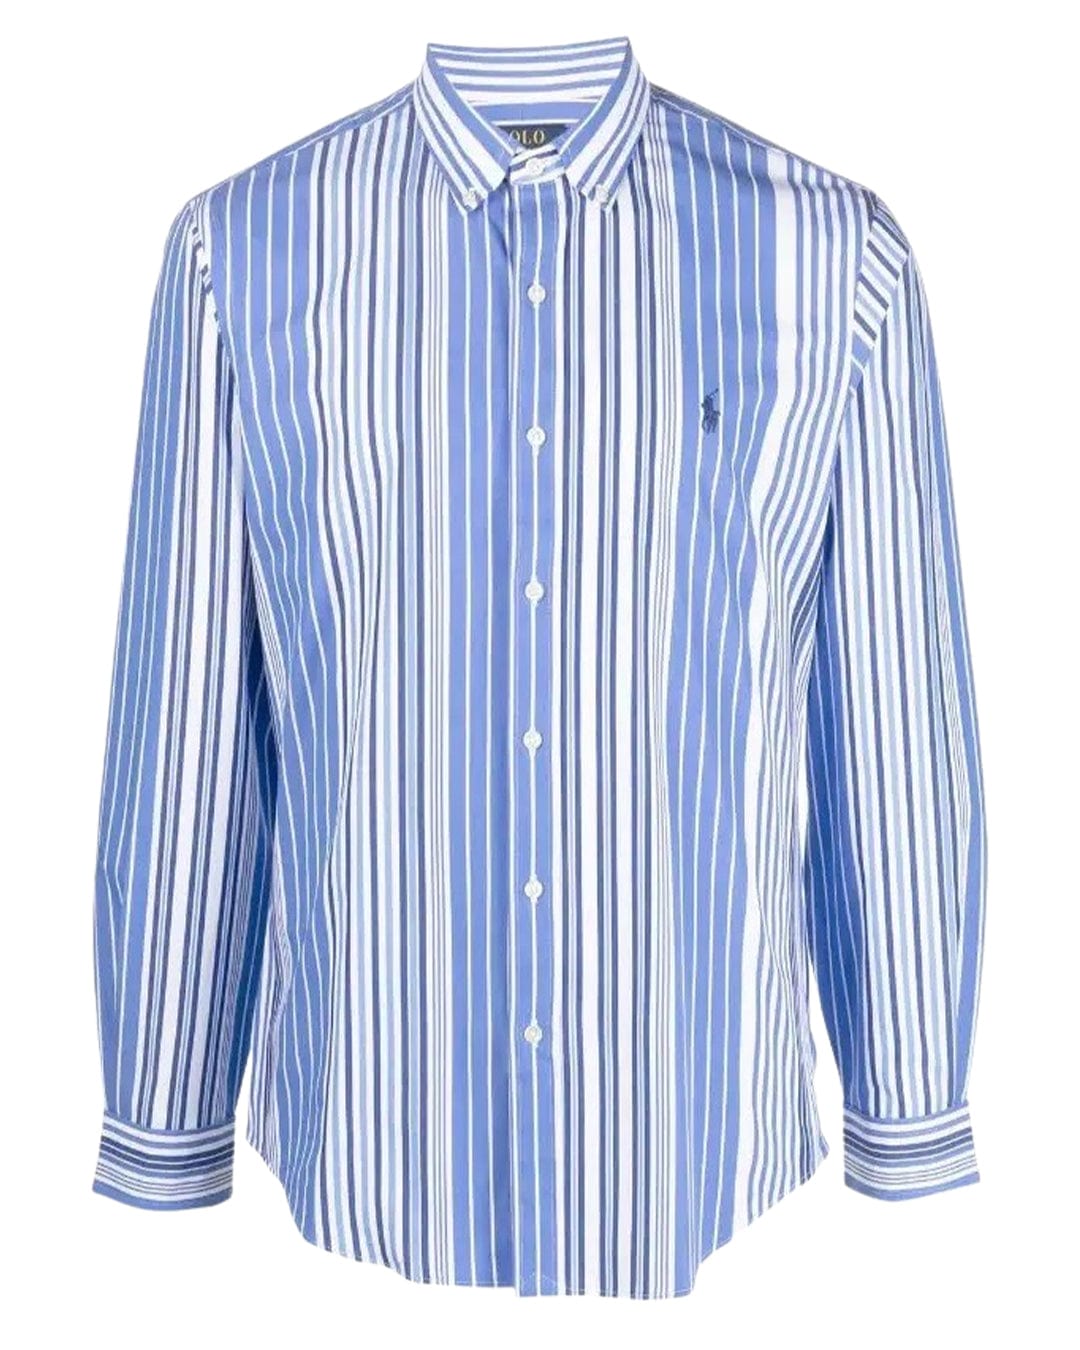 Polo Ralph Lauren Shirts Polo Ralph Lauren Striped Mix Stretch Cotton Shirt